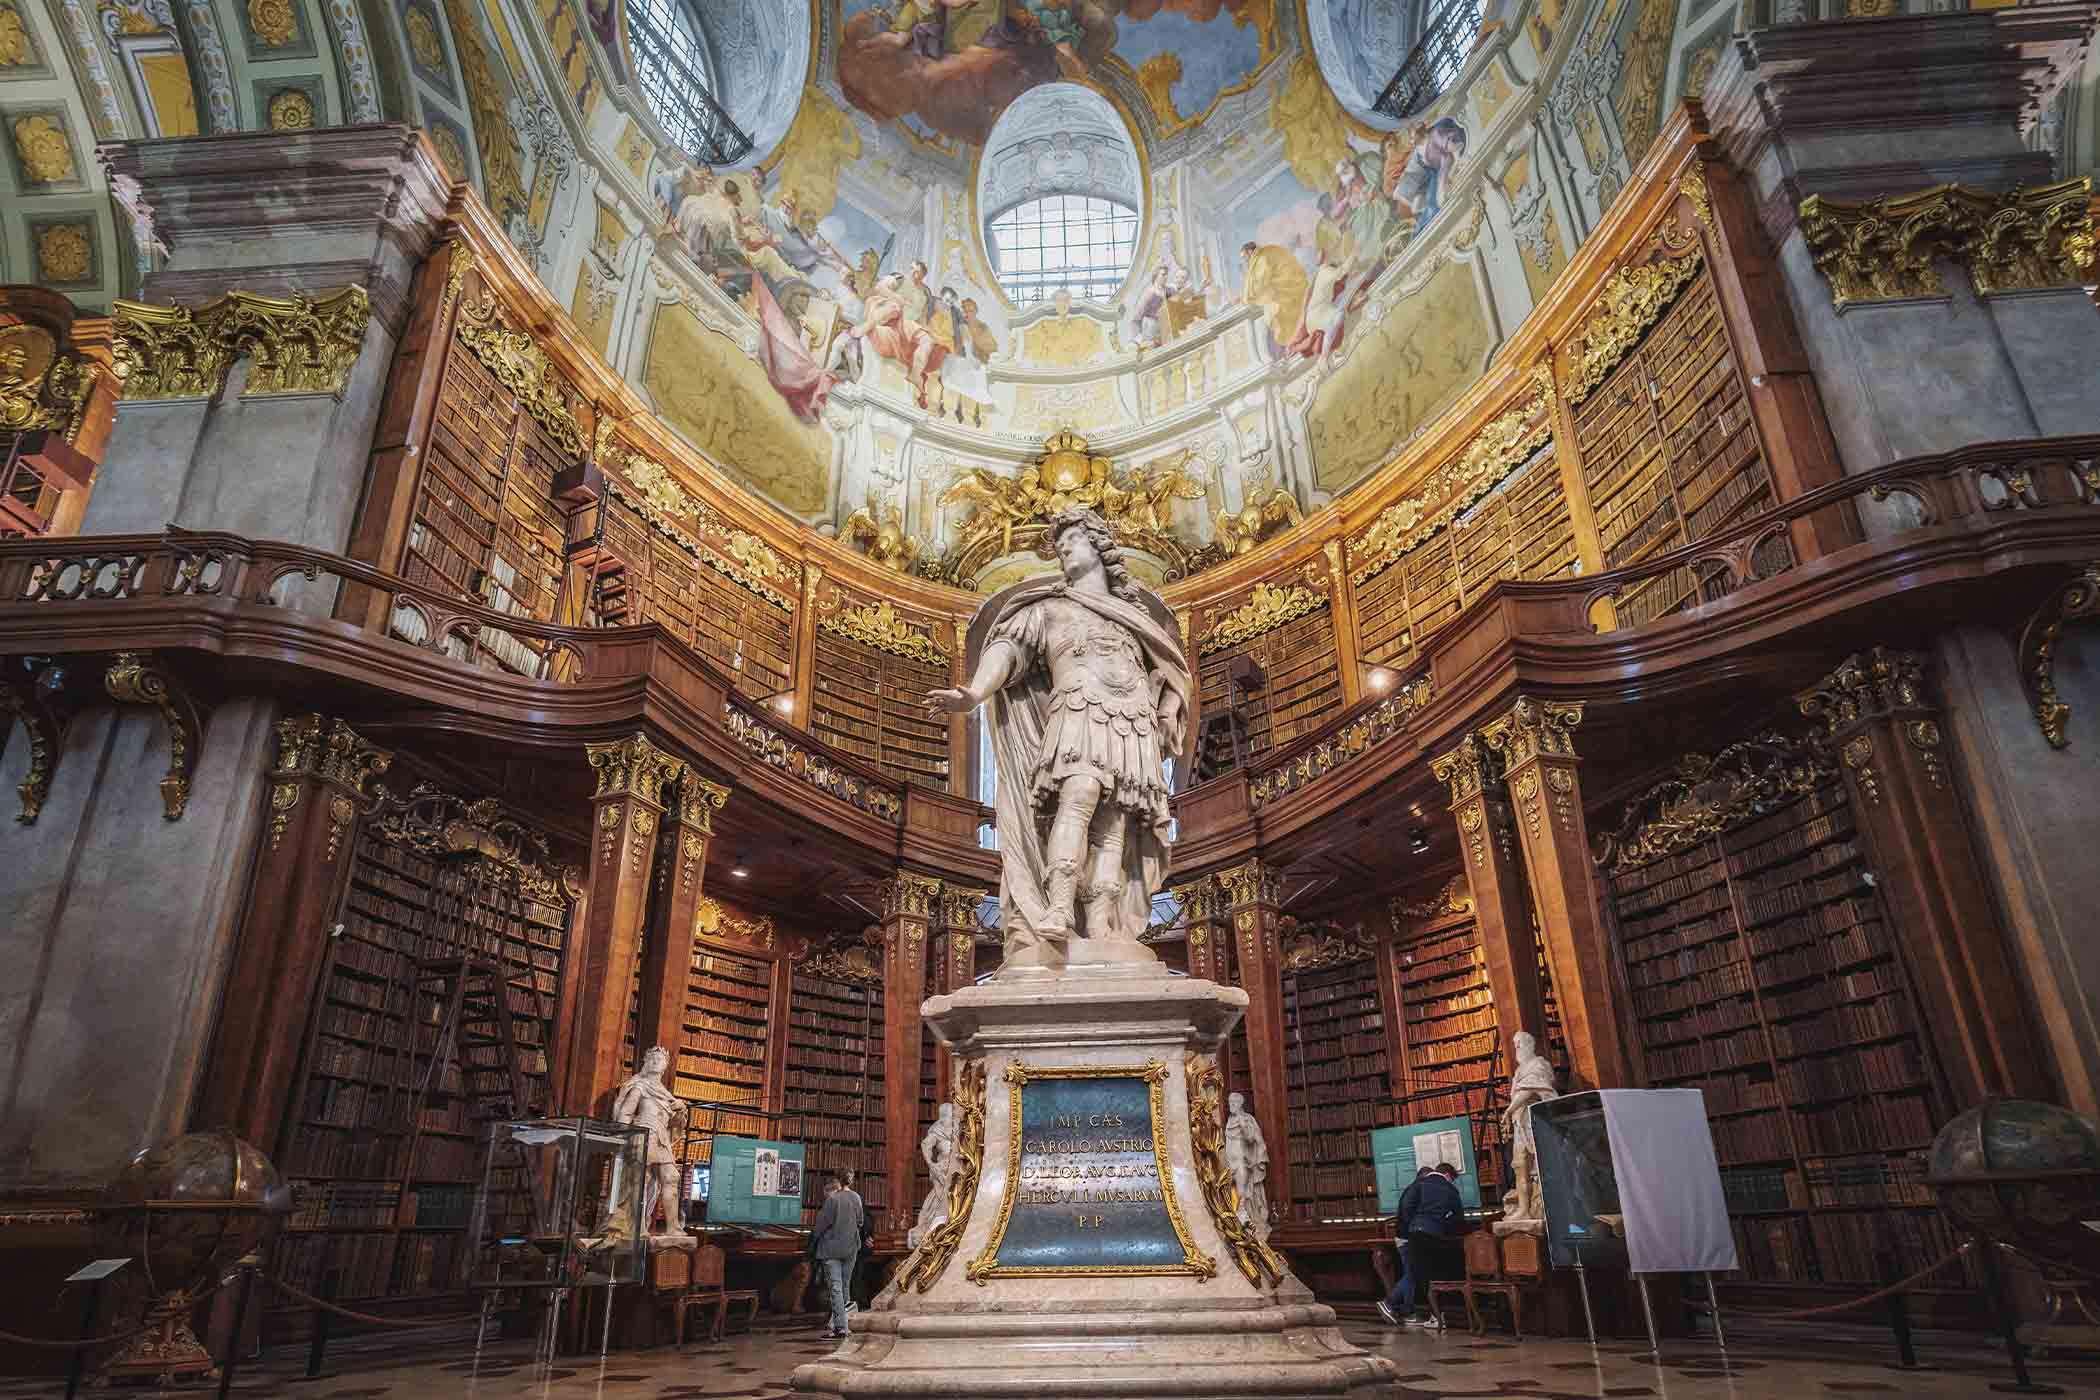 Một bức tượng của Hoàng đế Charles Đệ tứ bên trong Đại sảnh Quốc gia của Thư viện Quốc gia Áo ở thành phố Vienna, Áo. (Ảnh: Diego Grandi/Shutterstock)